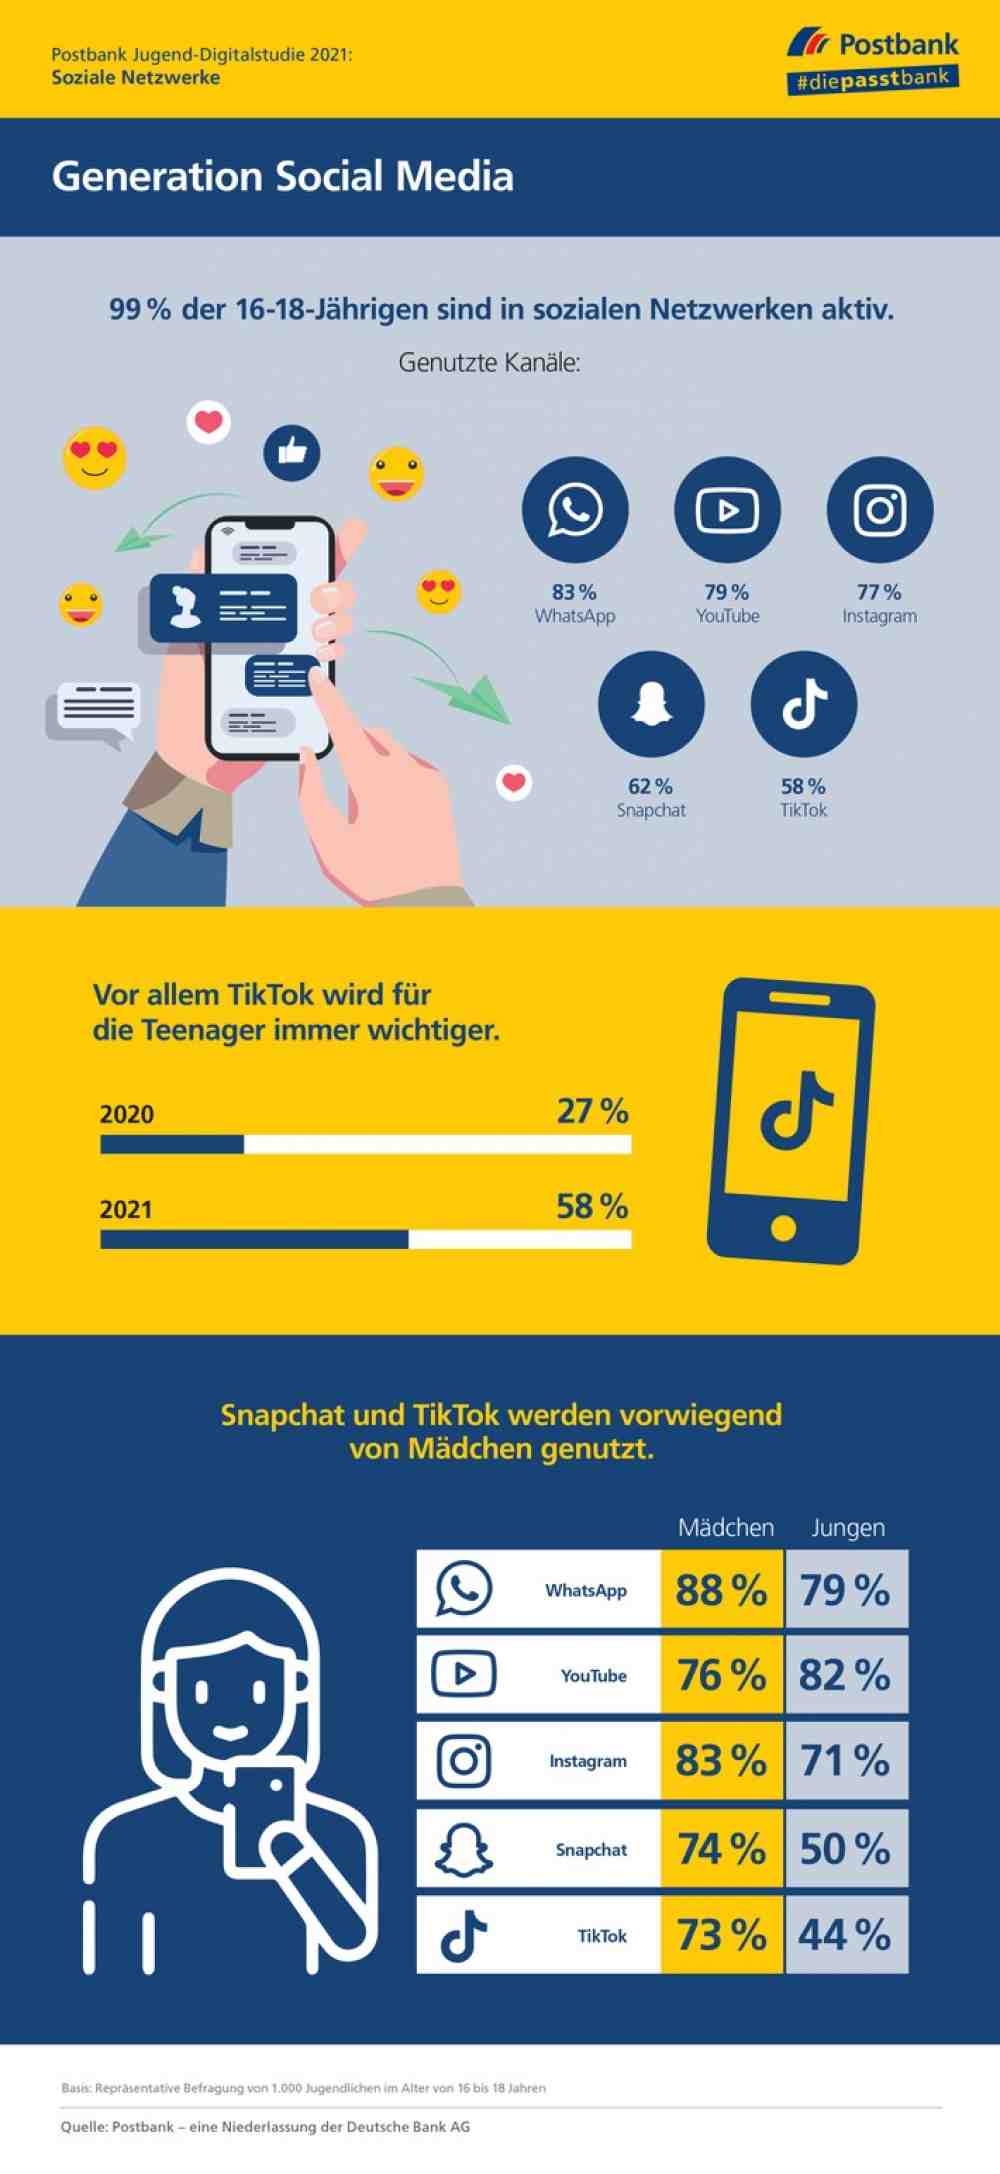 Postbank Jugend-Digitalstudie 2021 – Social Media: Whatsapp, Youtube und Instagram sind am wichtigsten